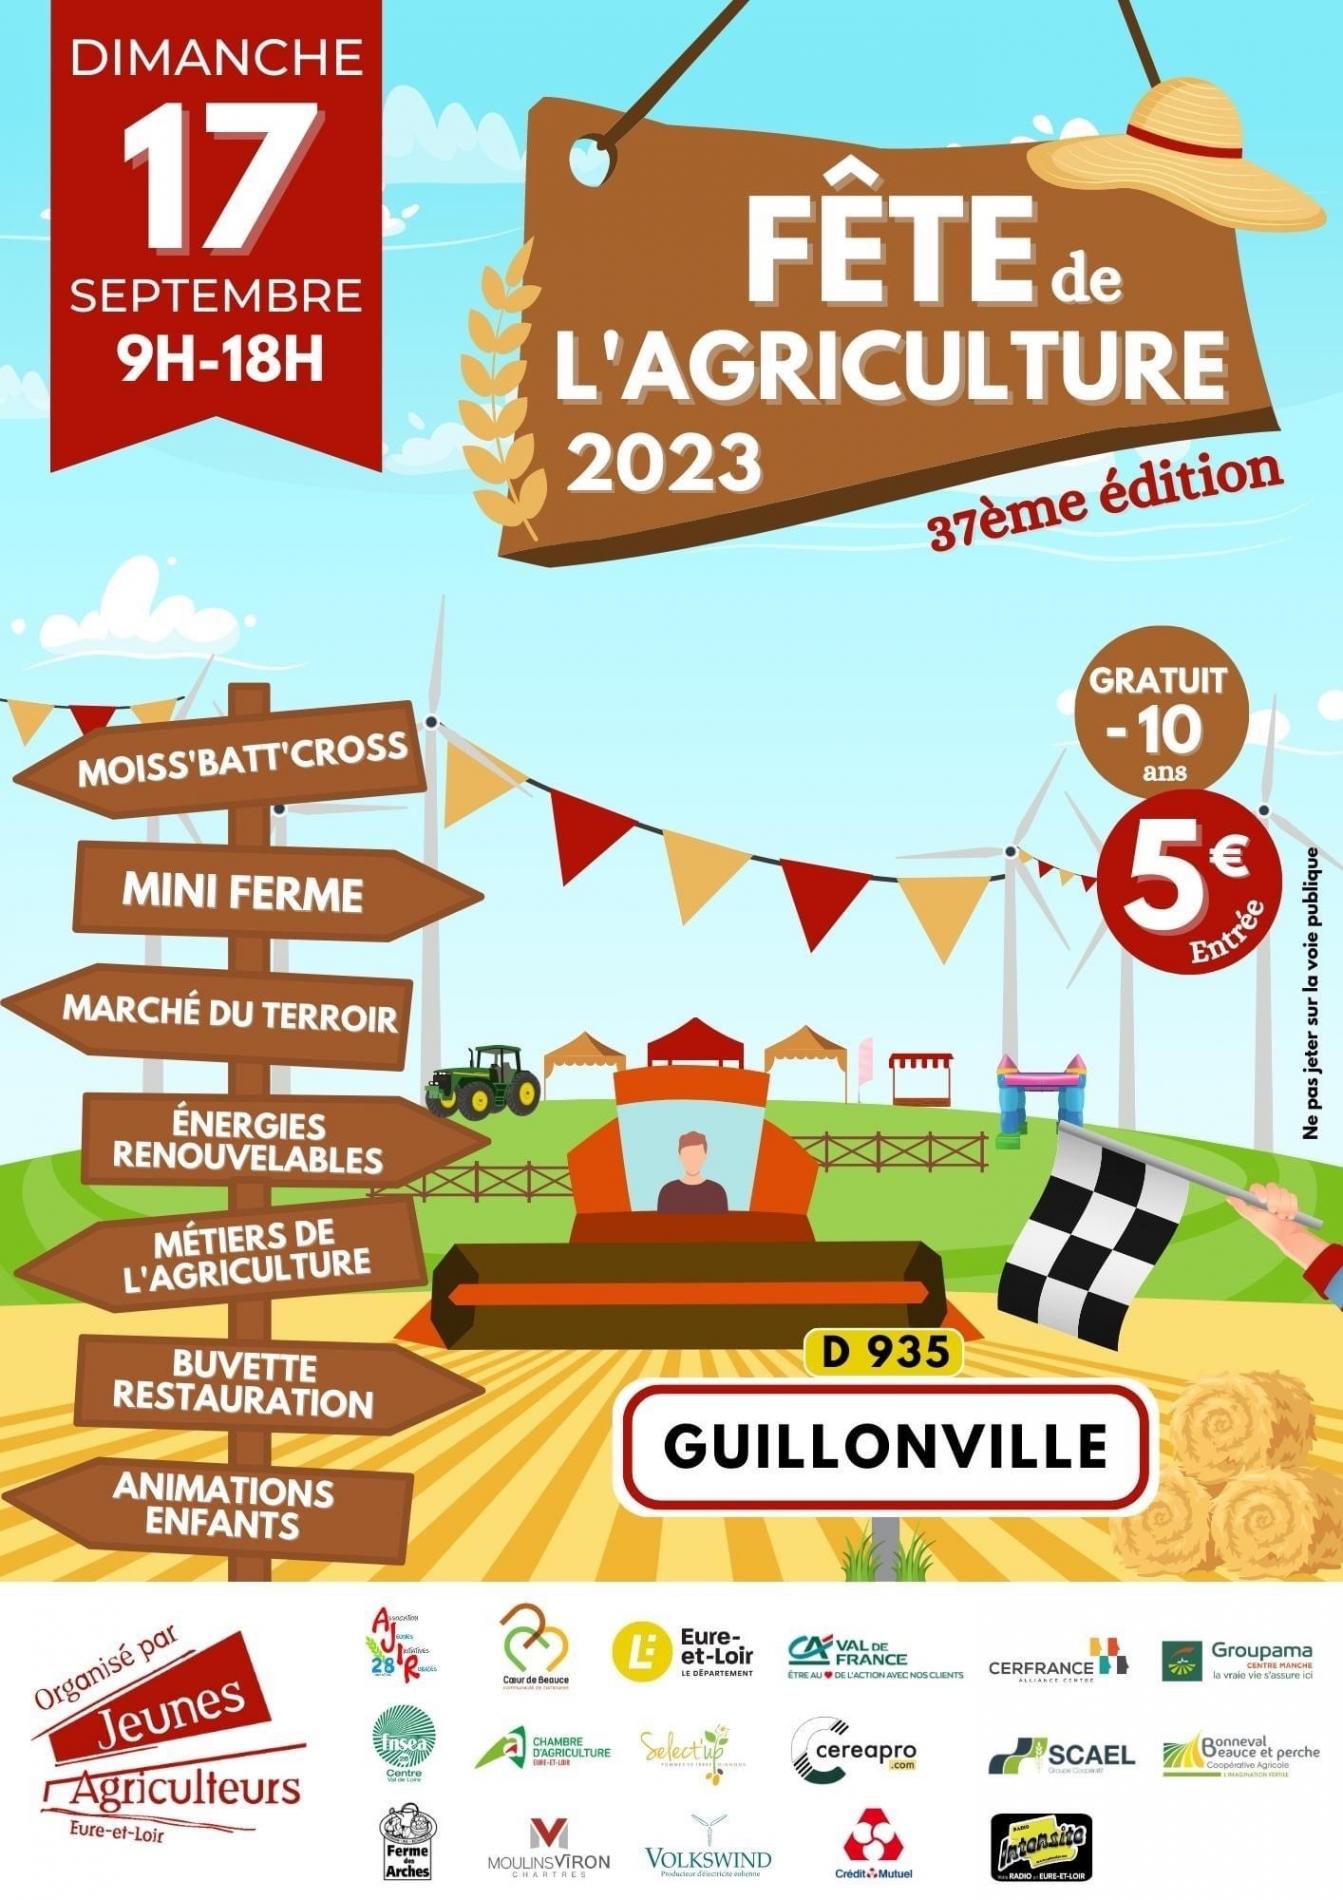 Fête de l'agriculture 2023 - Guillonville (28)